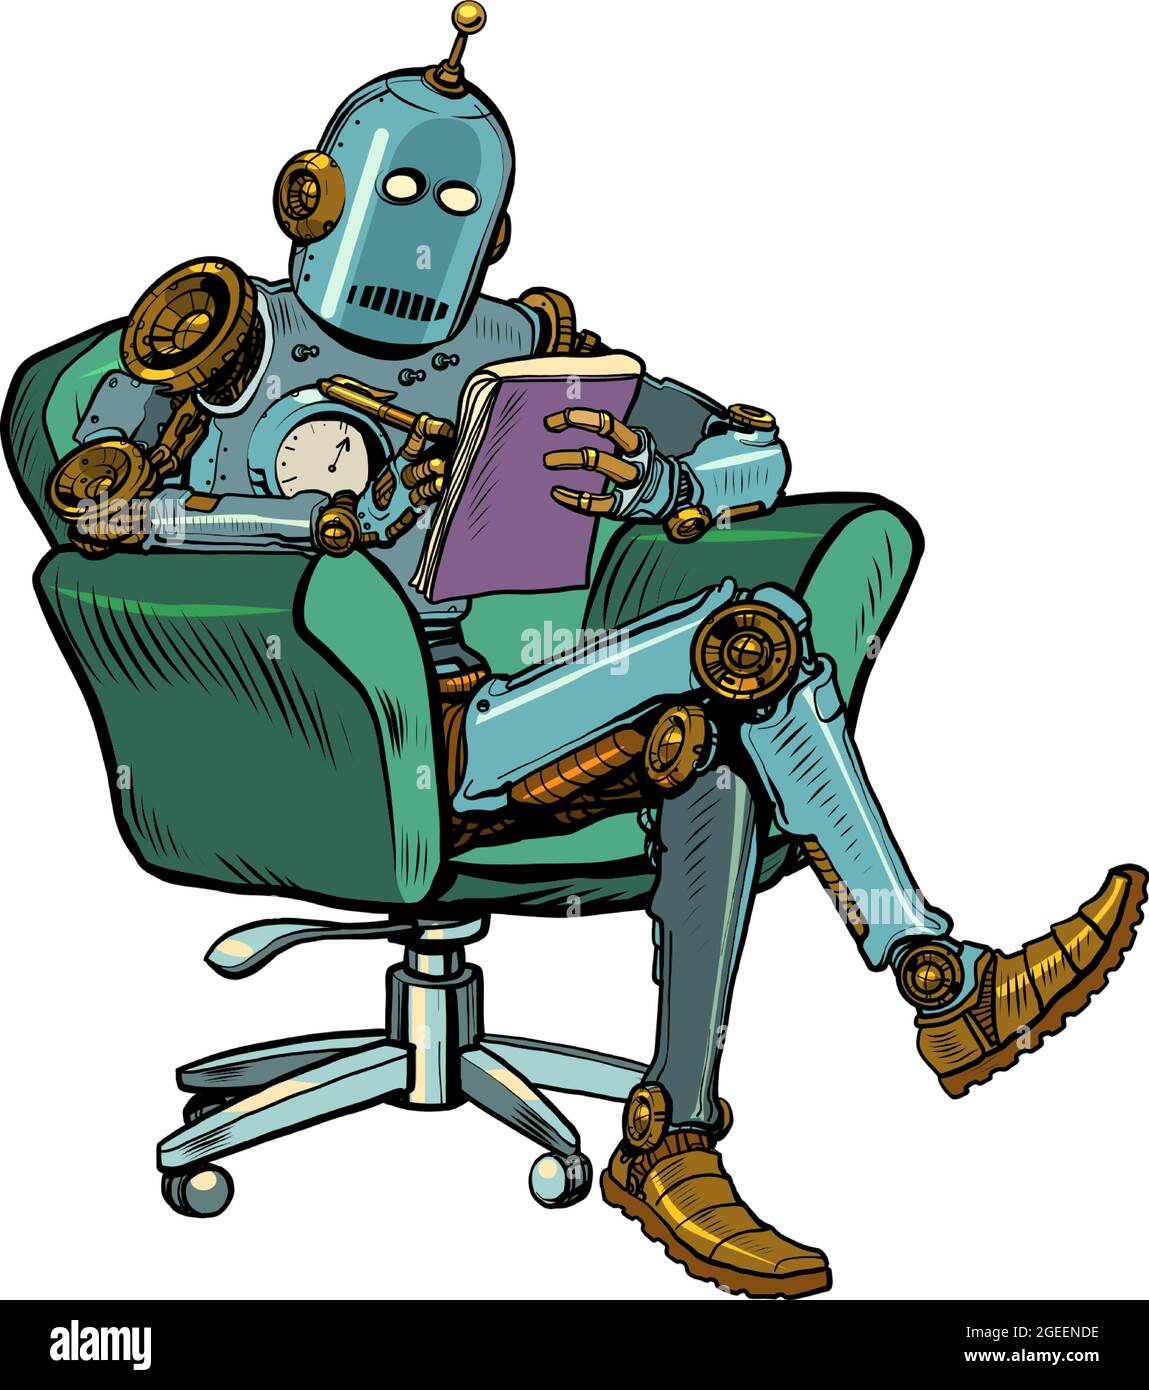 Un robot psychothérapeute est dans une séance de psychothérapie, assis dans une chaise et de prendre des notes dans un carnet Illustration de Vecteur